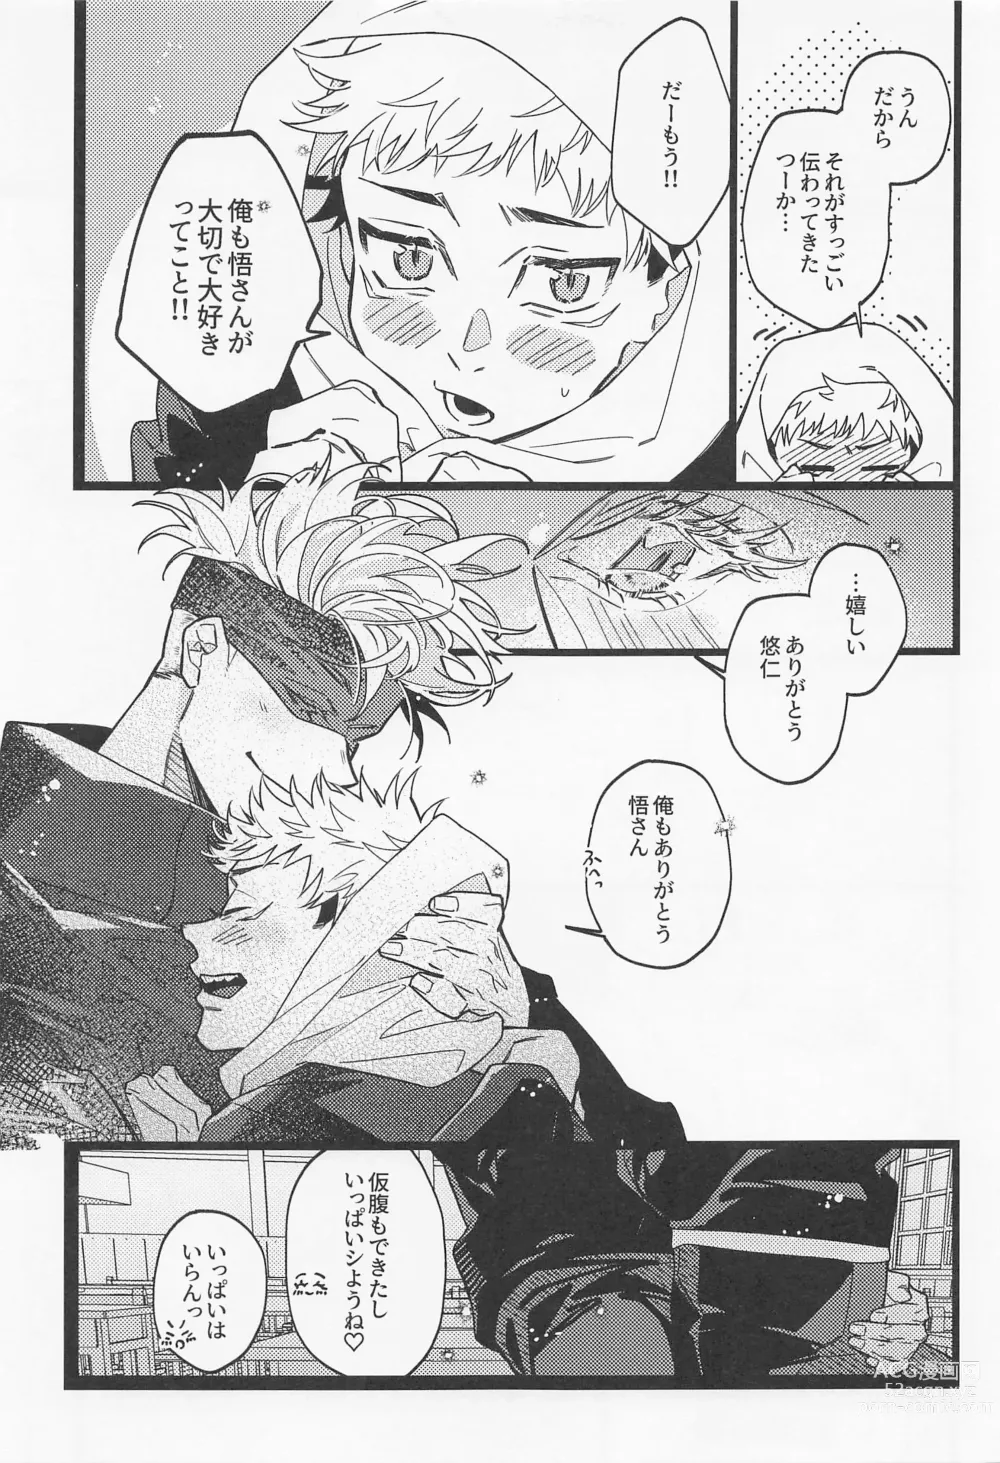 Page 46 of doujinshi Fukashin Ryouiki